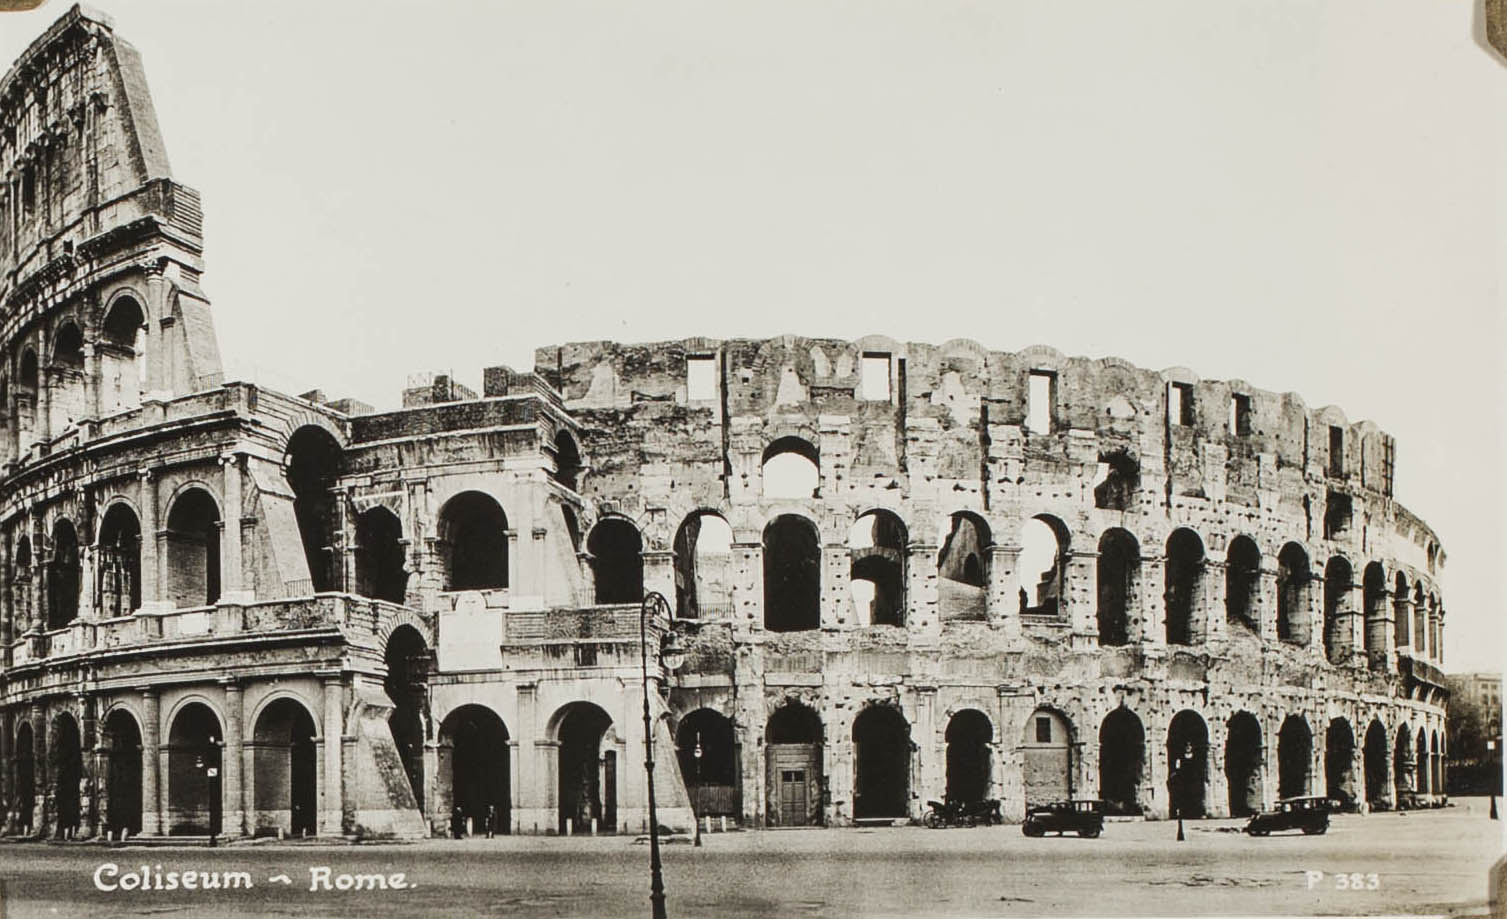 Coliseum - Rome c.1930-1940